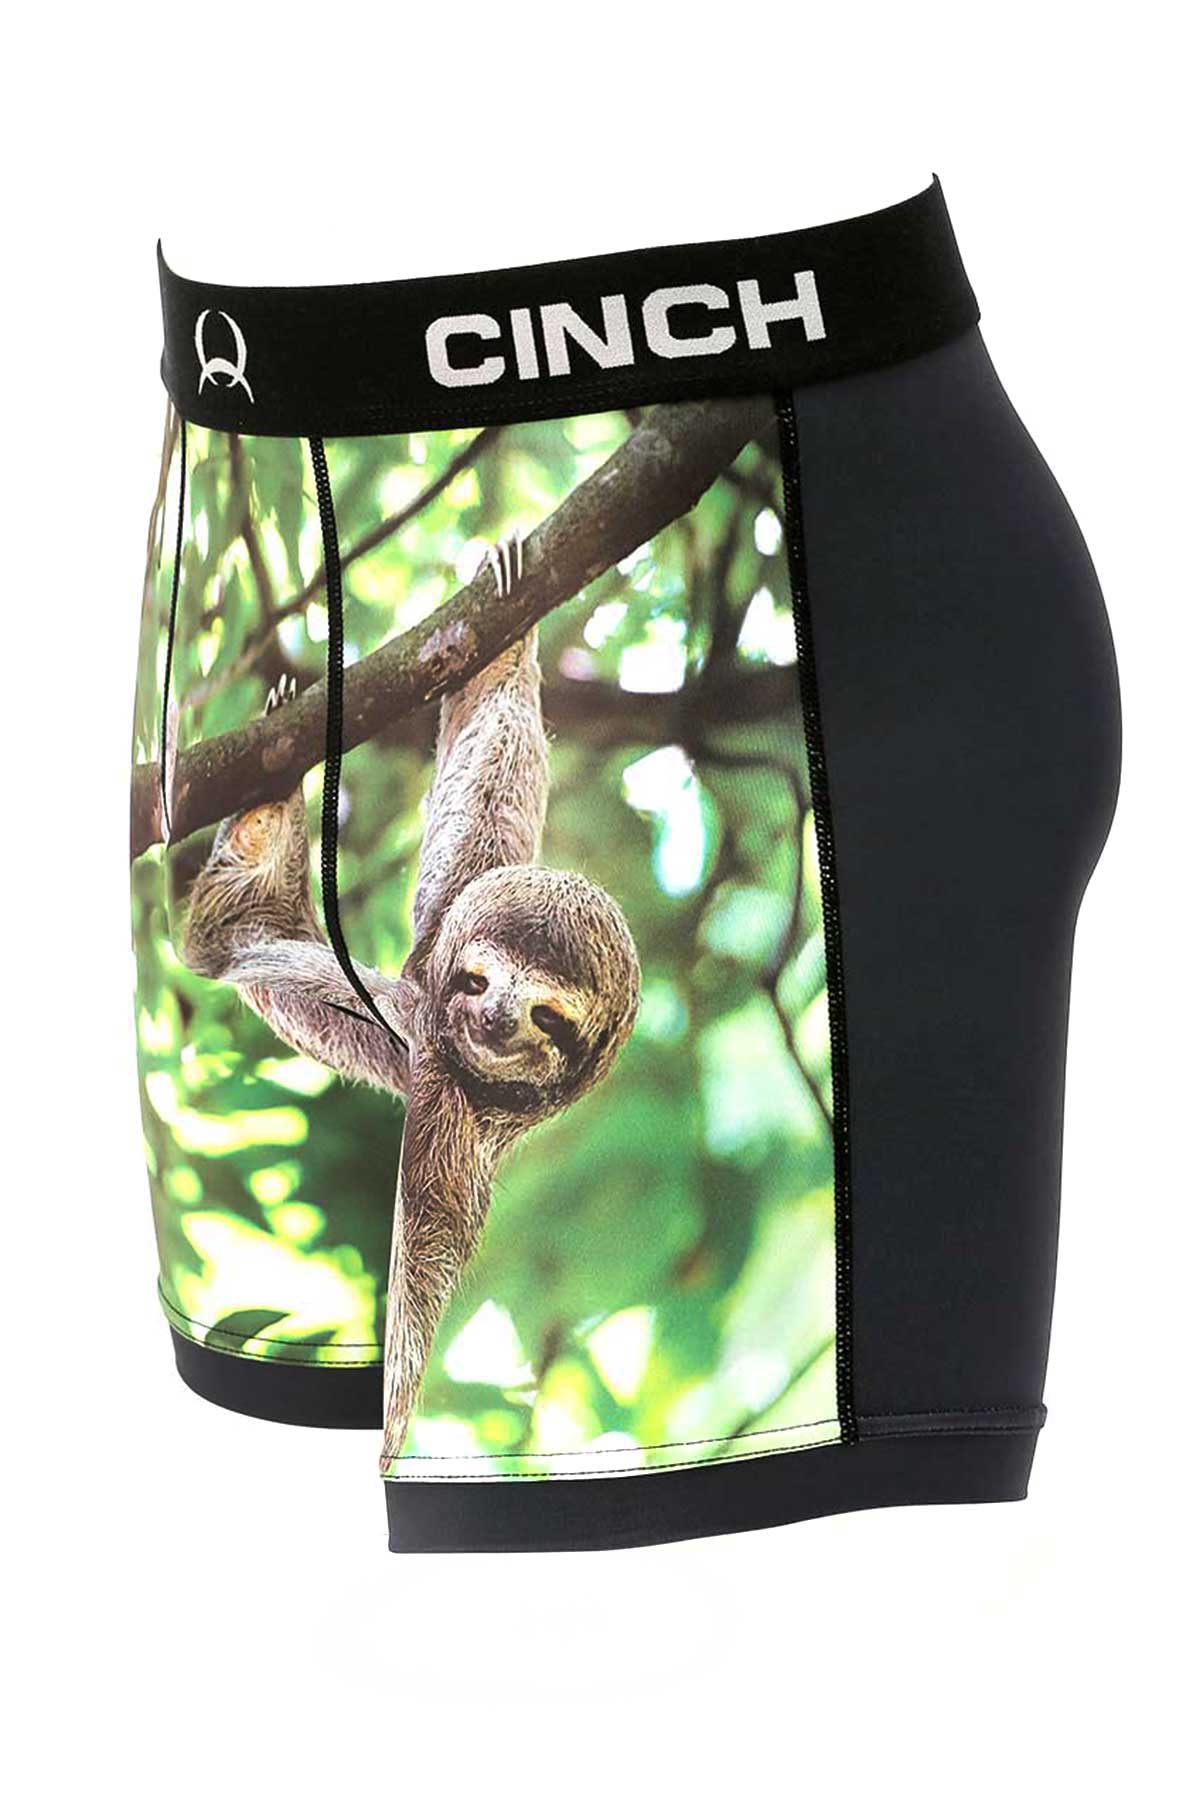 Cinch Men's Sloth Boxer Briefs